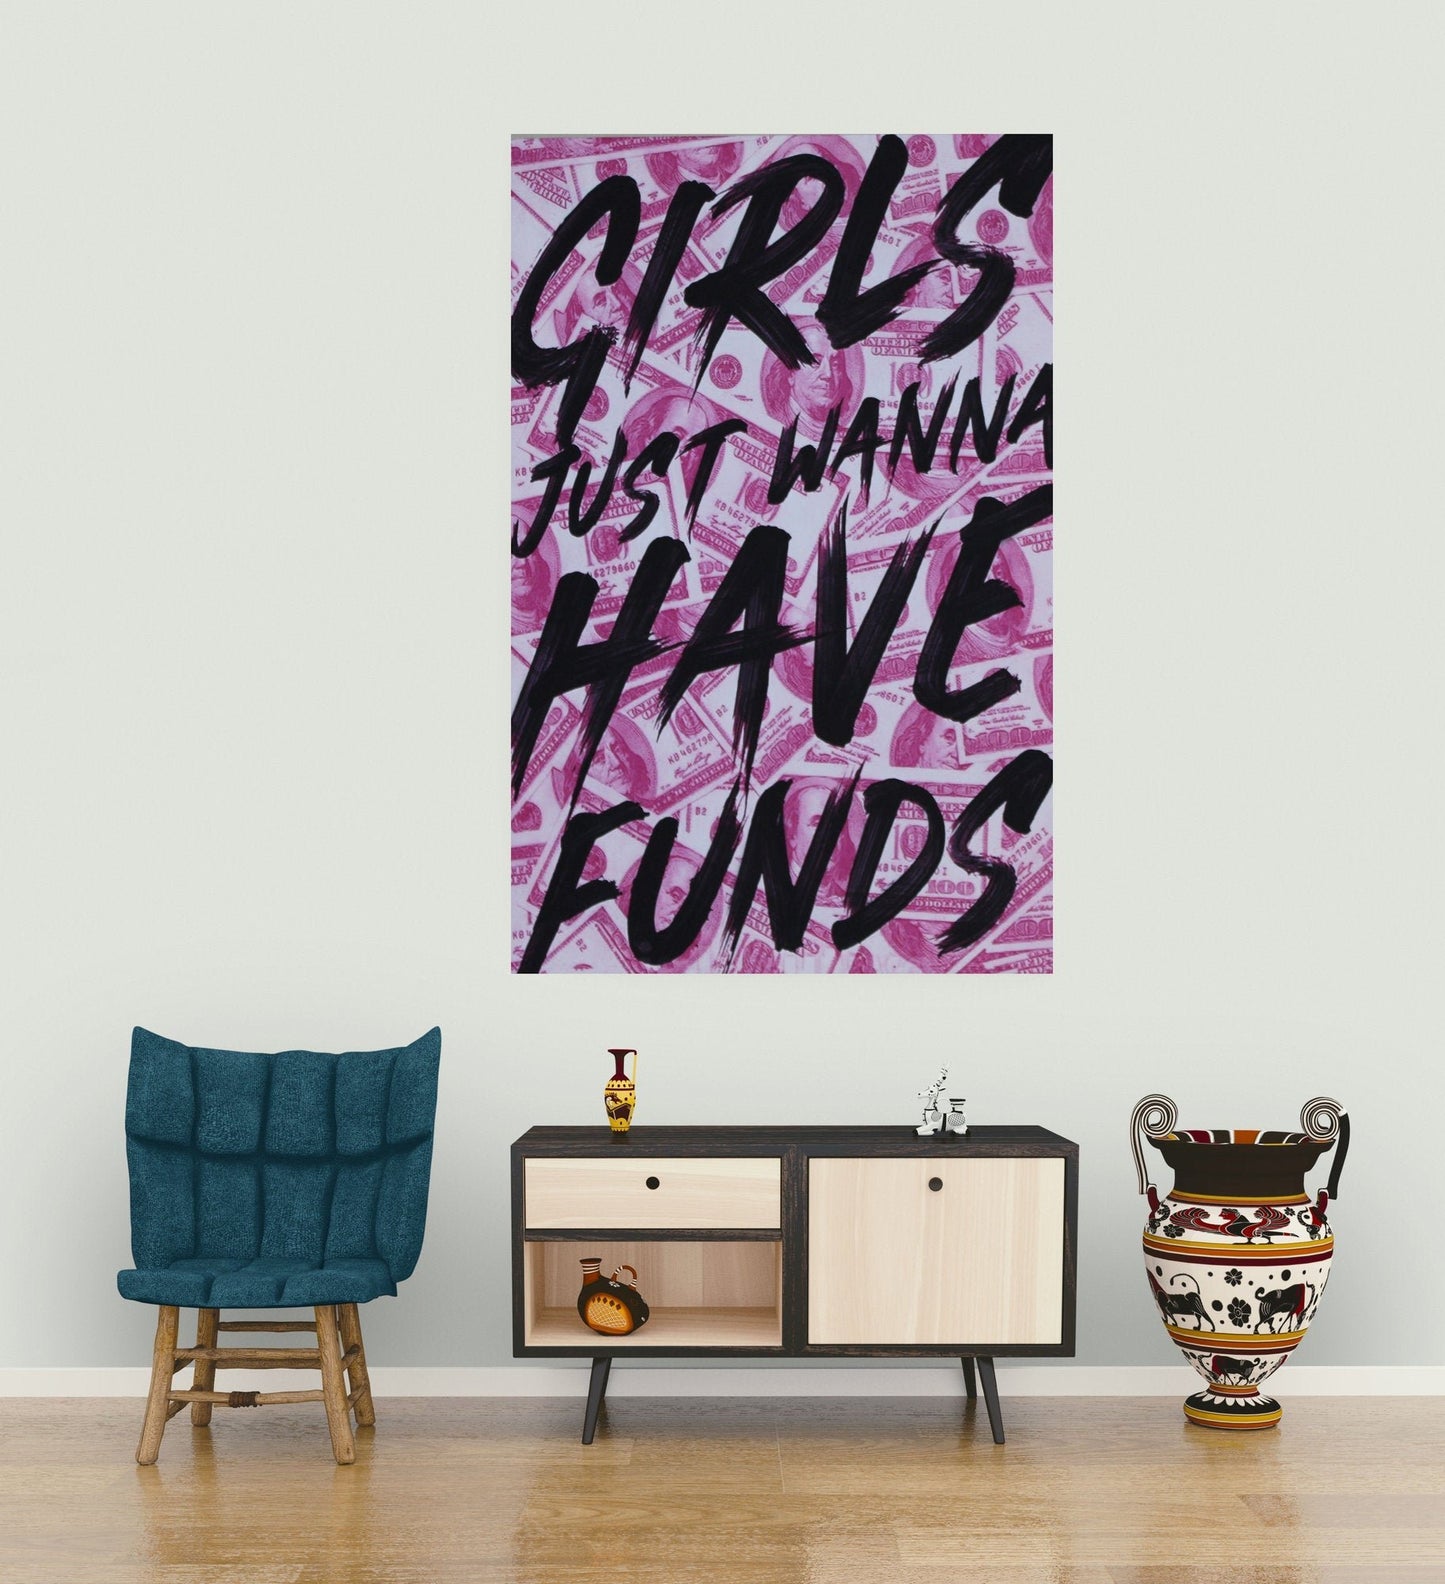 Girl Funds - Motivational Wall Art